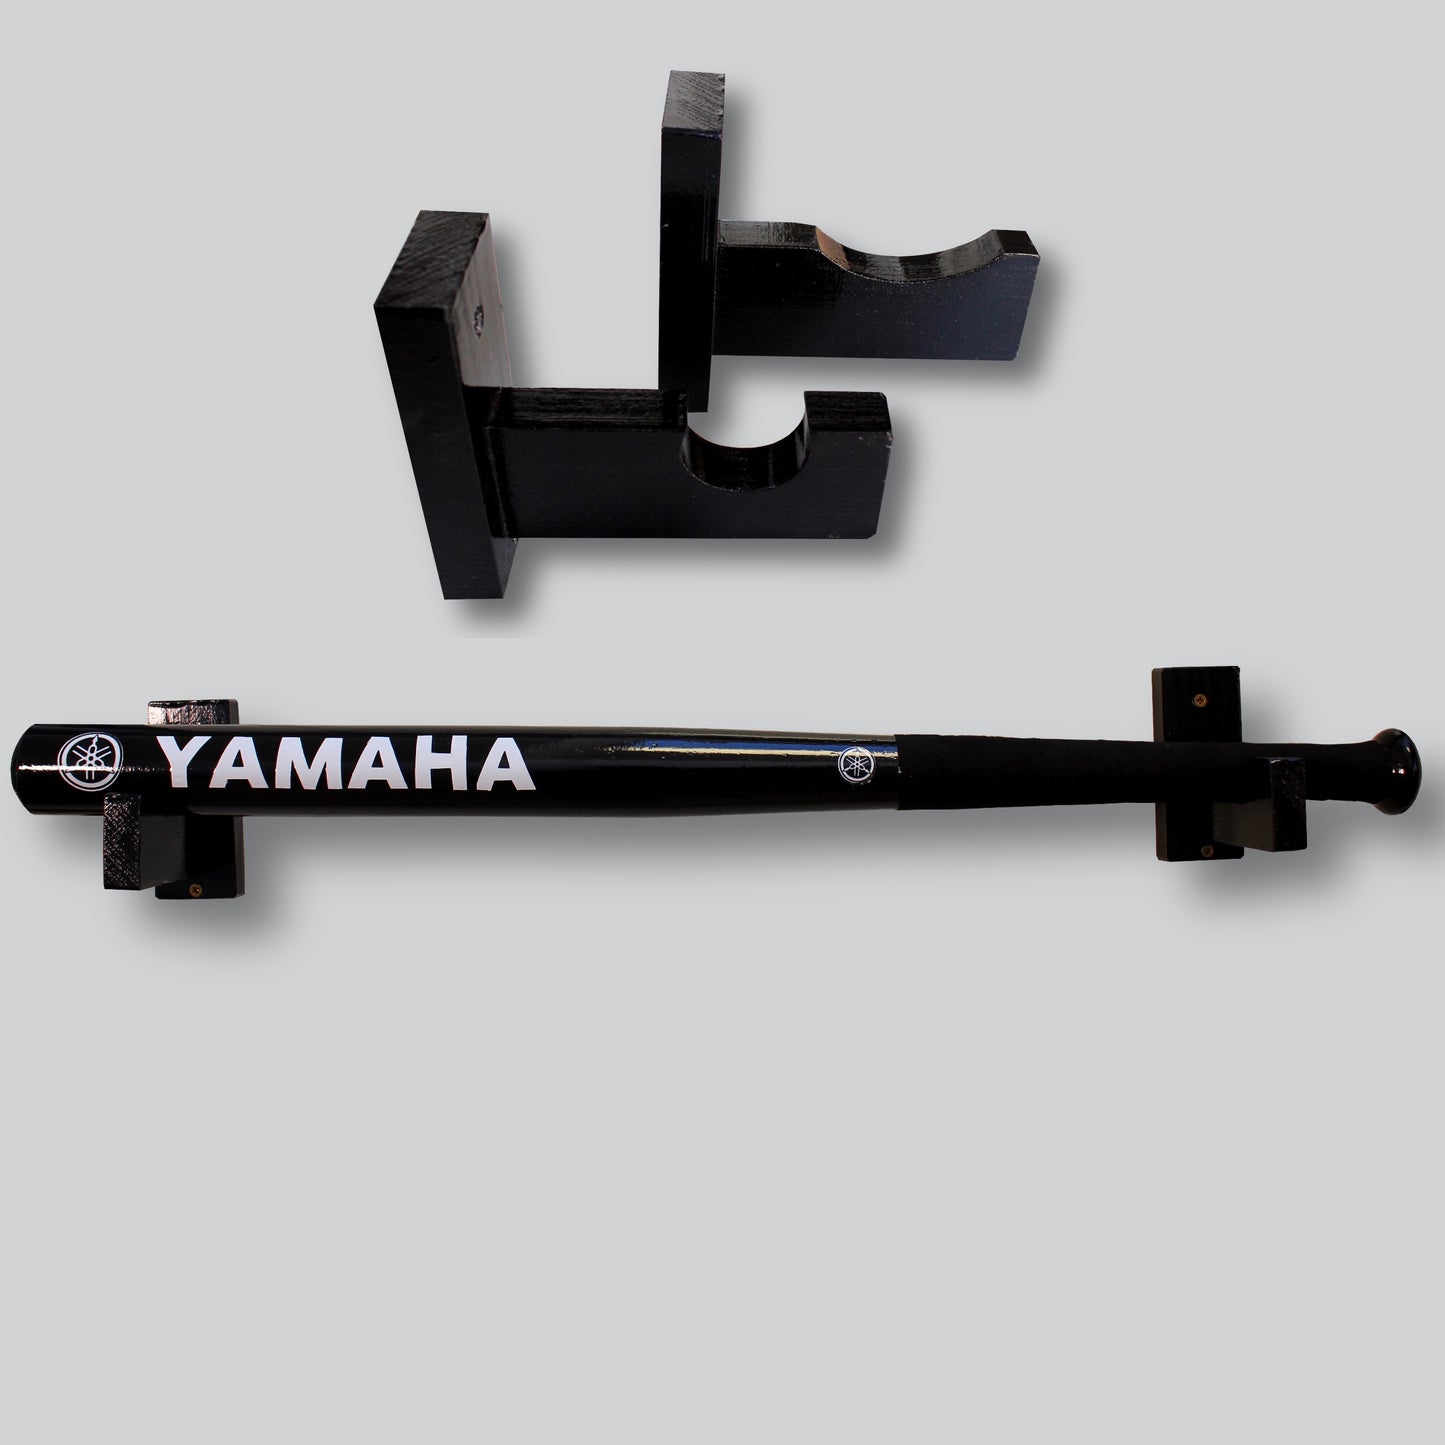 Yamaha baseball bat